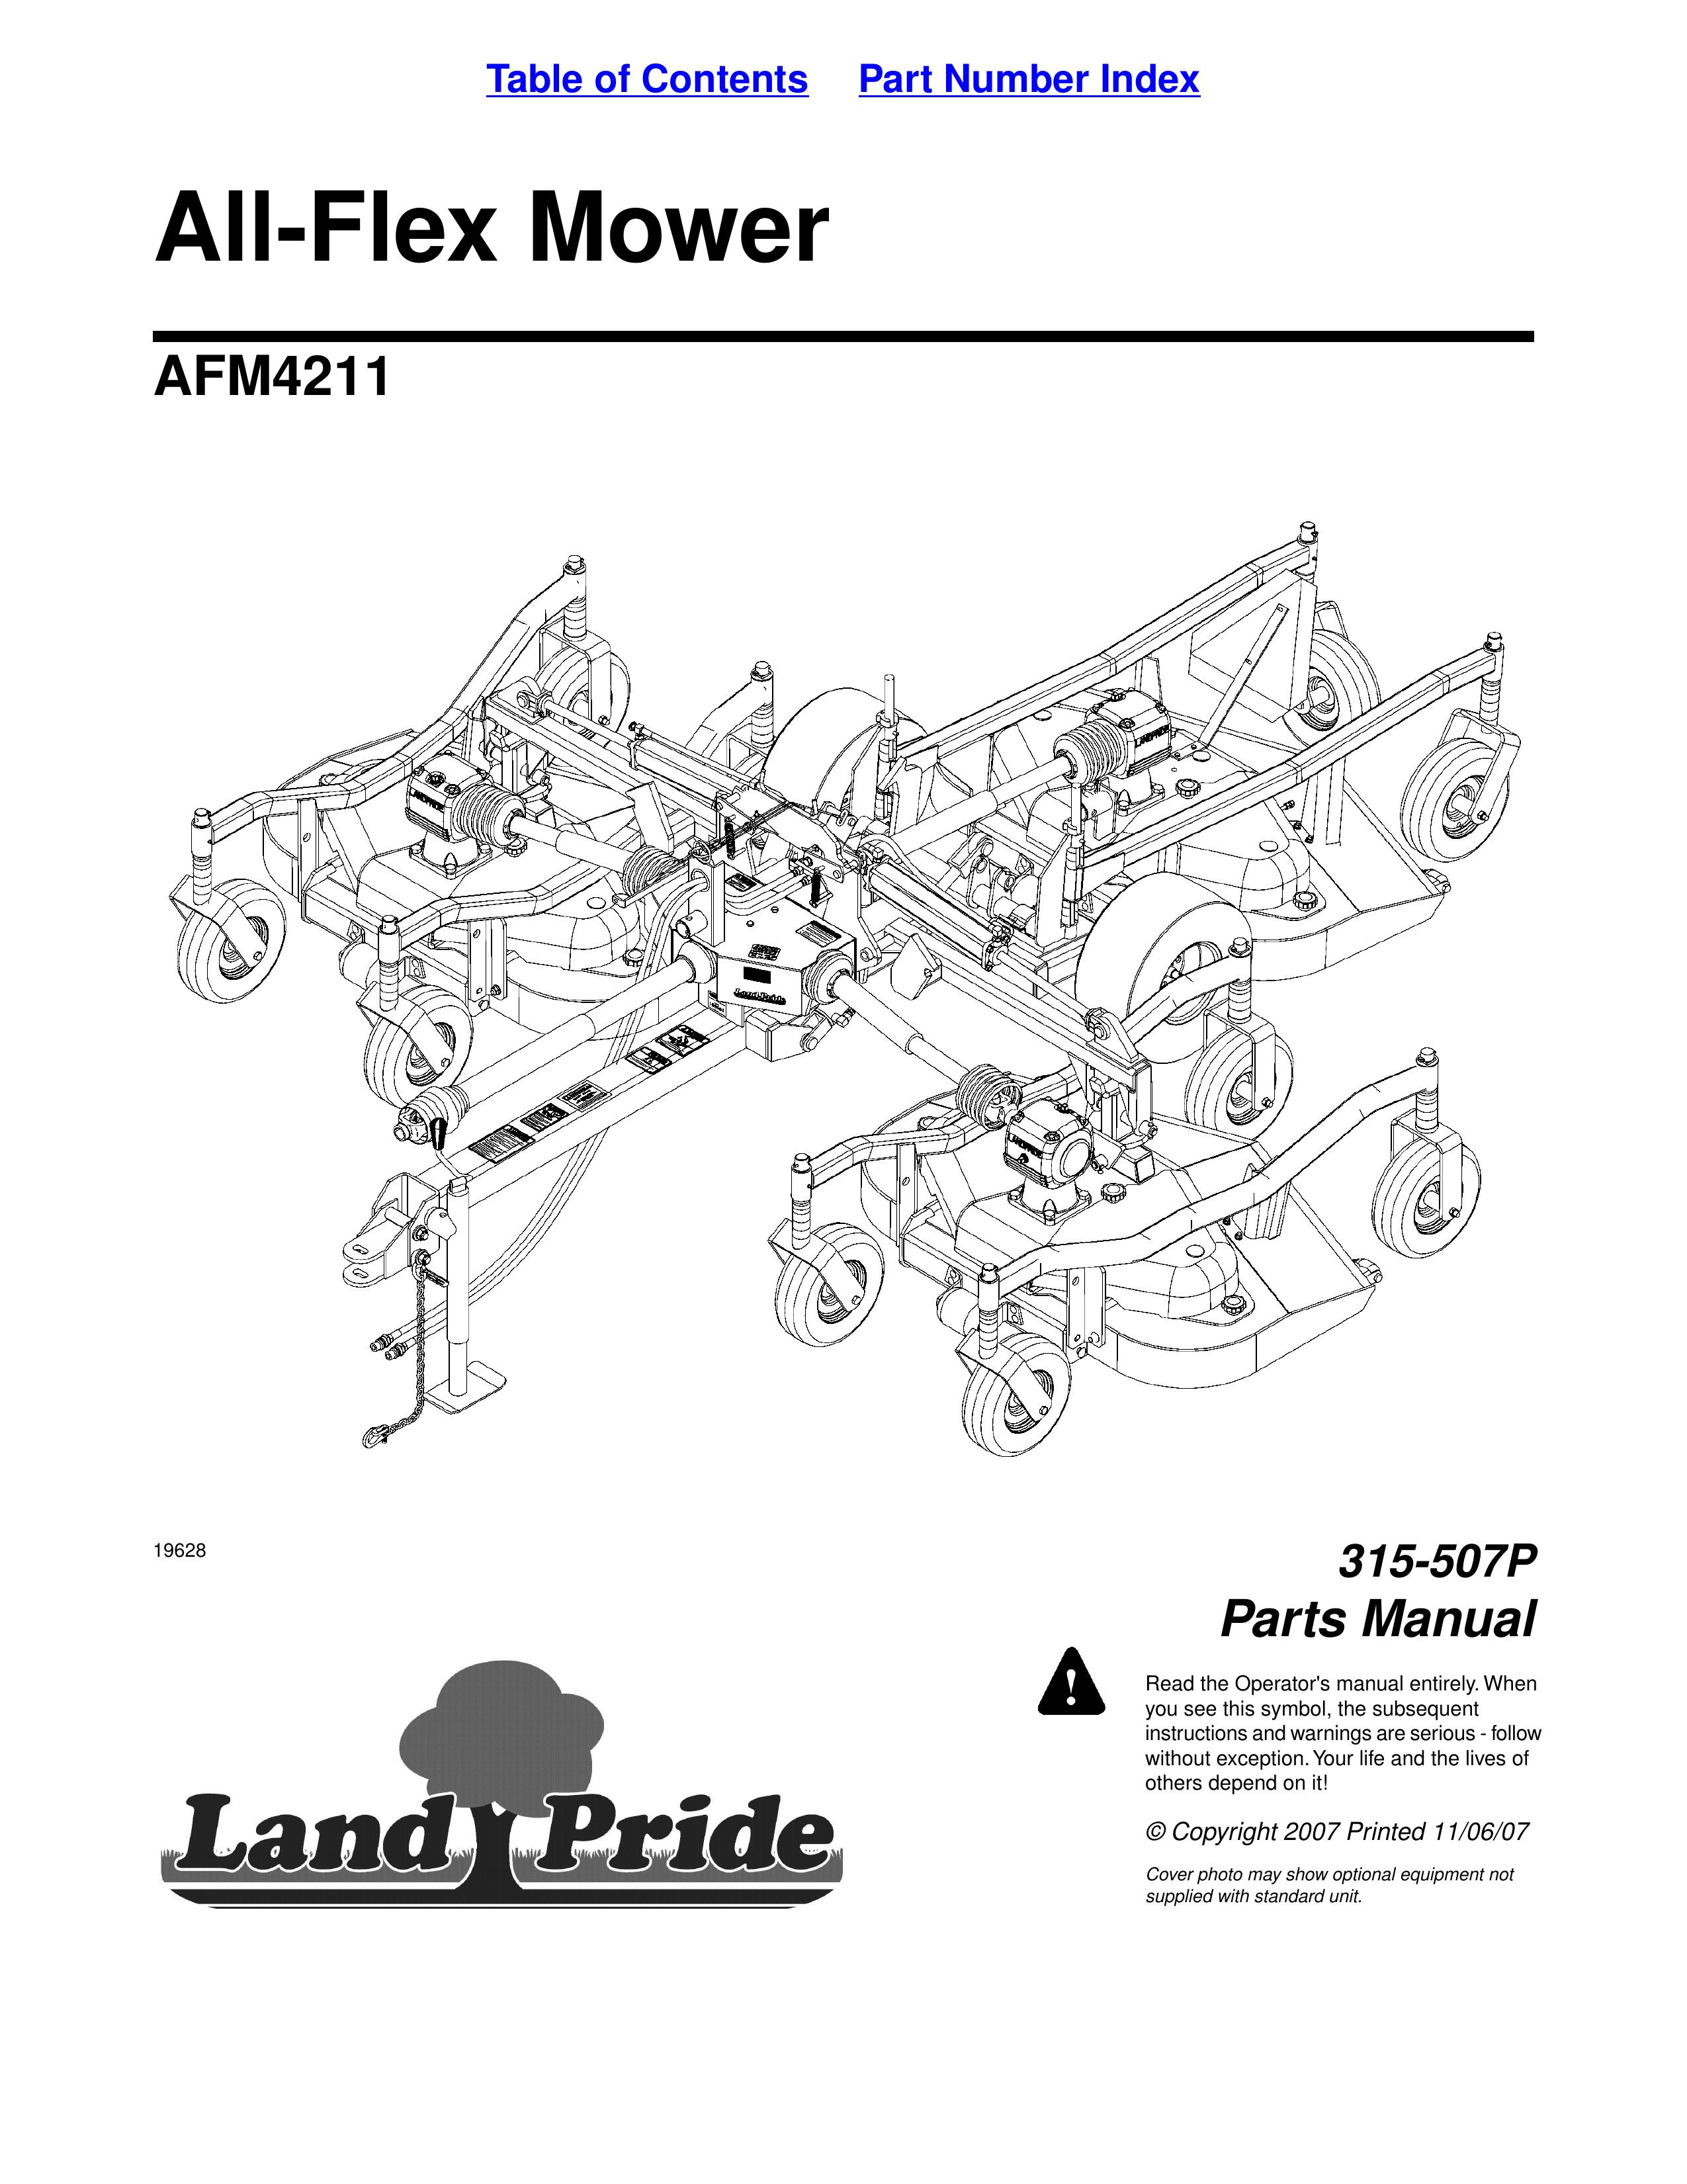 Land Pride 315-507P Lawn Mower User Manual